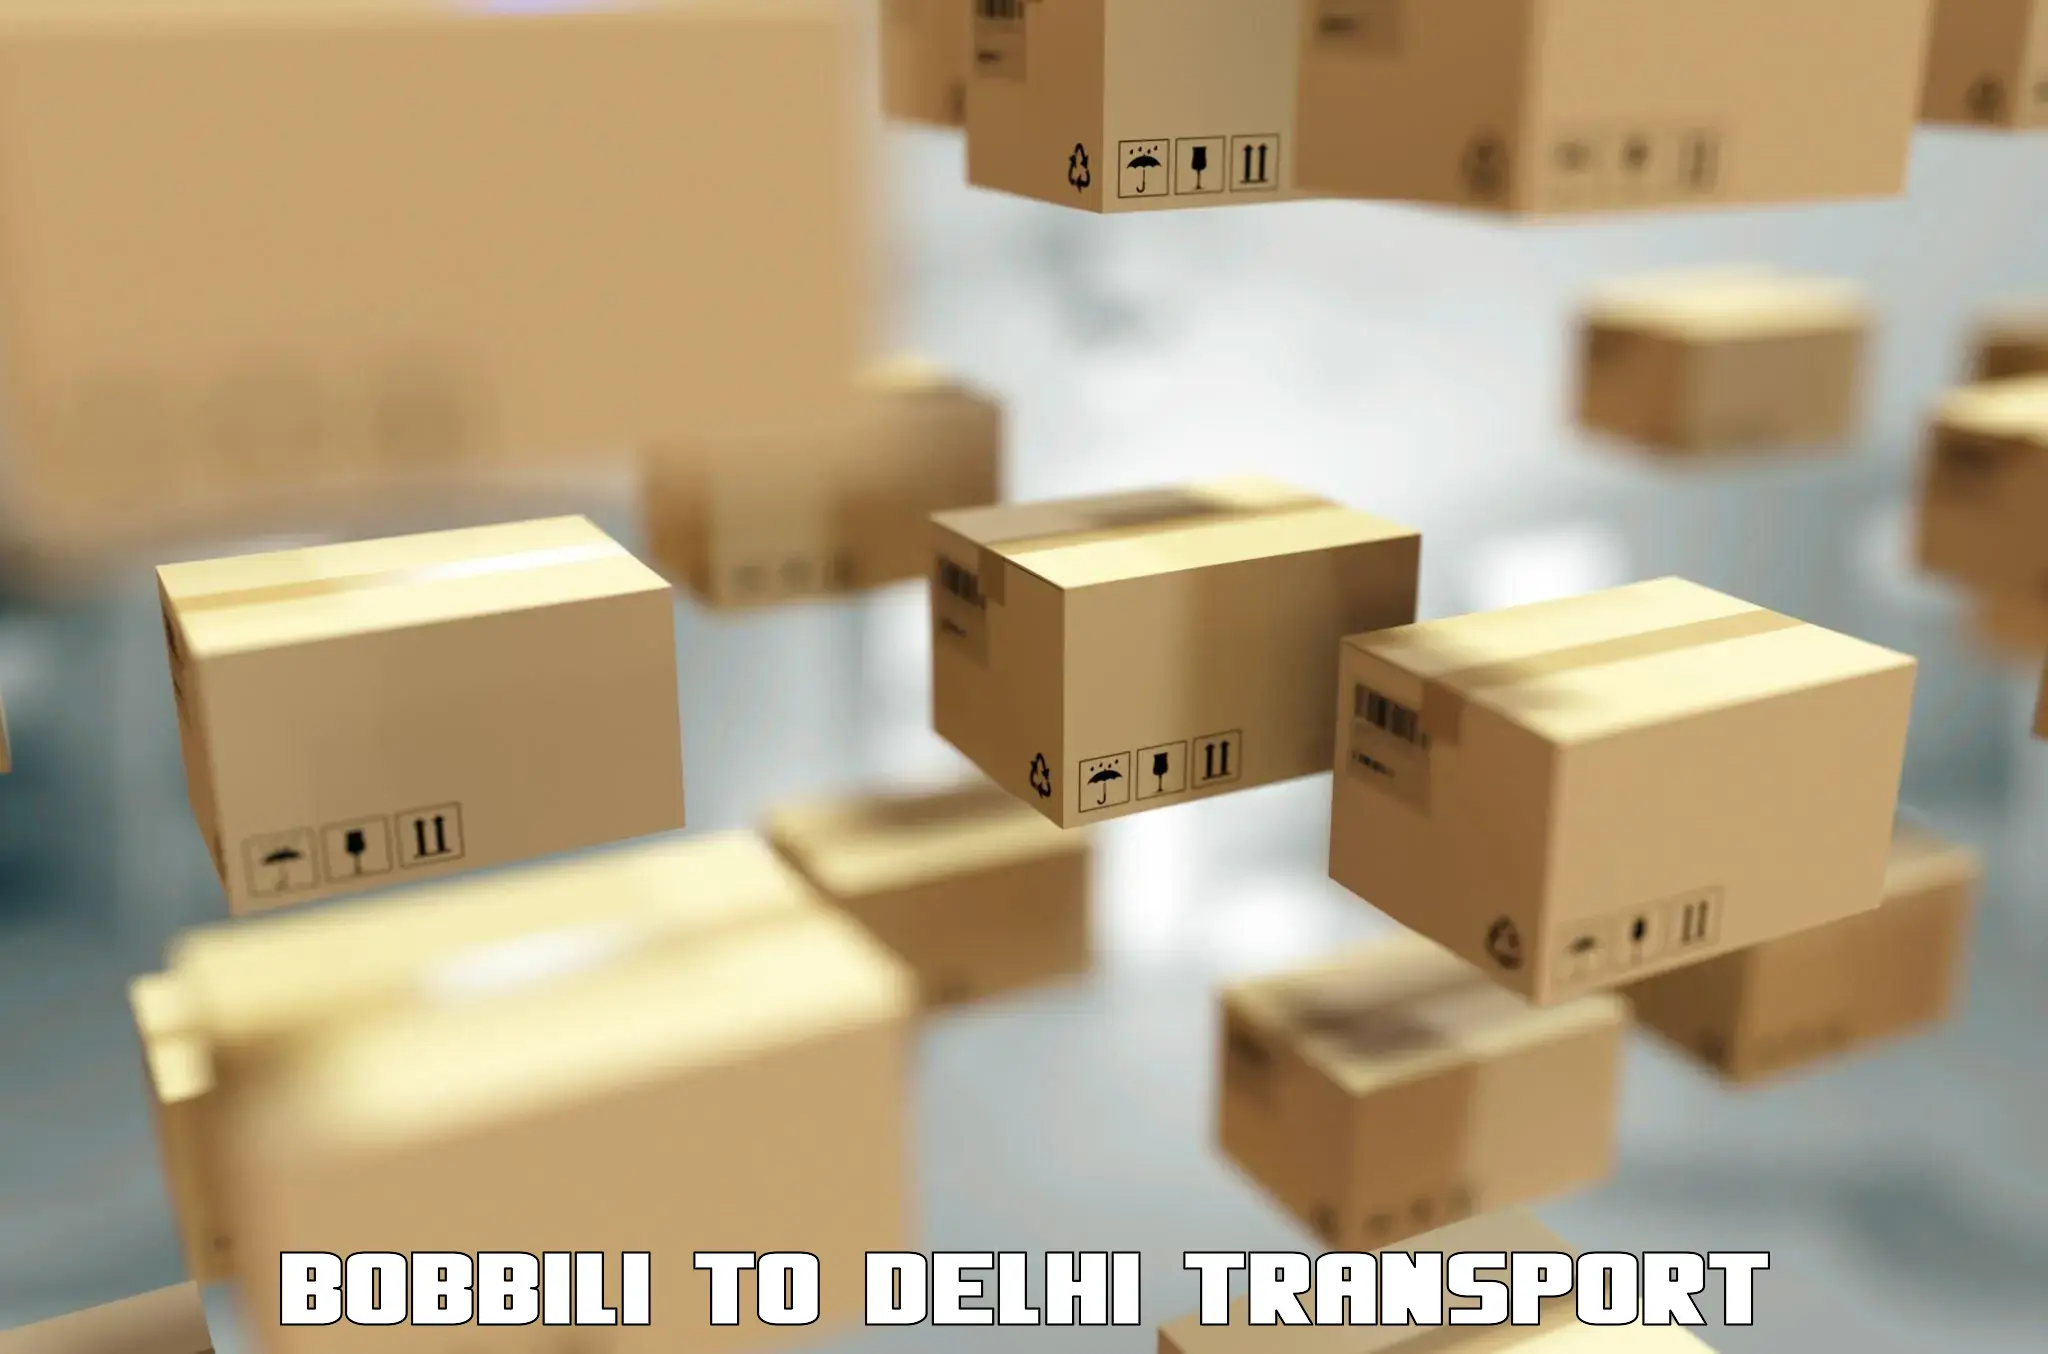 Domestic transport services Bobbili to Jamia Millia Islamia New Delhi